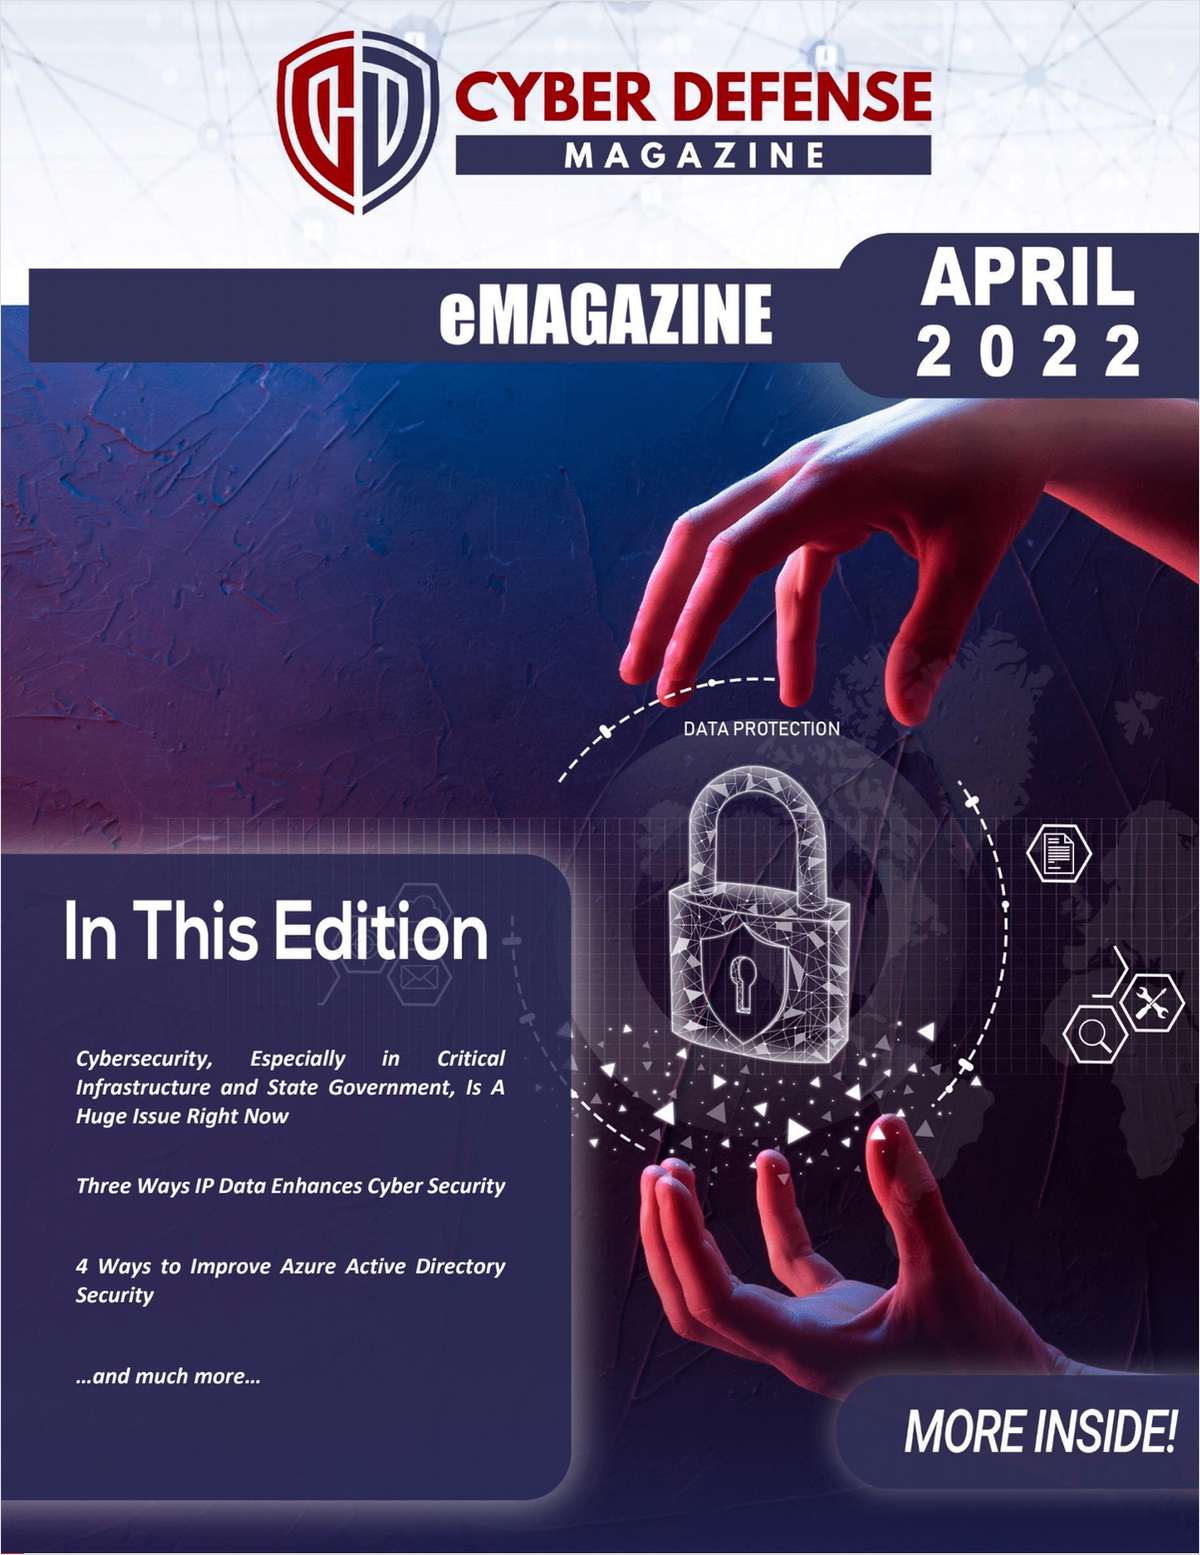 Cyber Defense Magazine April 2022 Edition